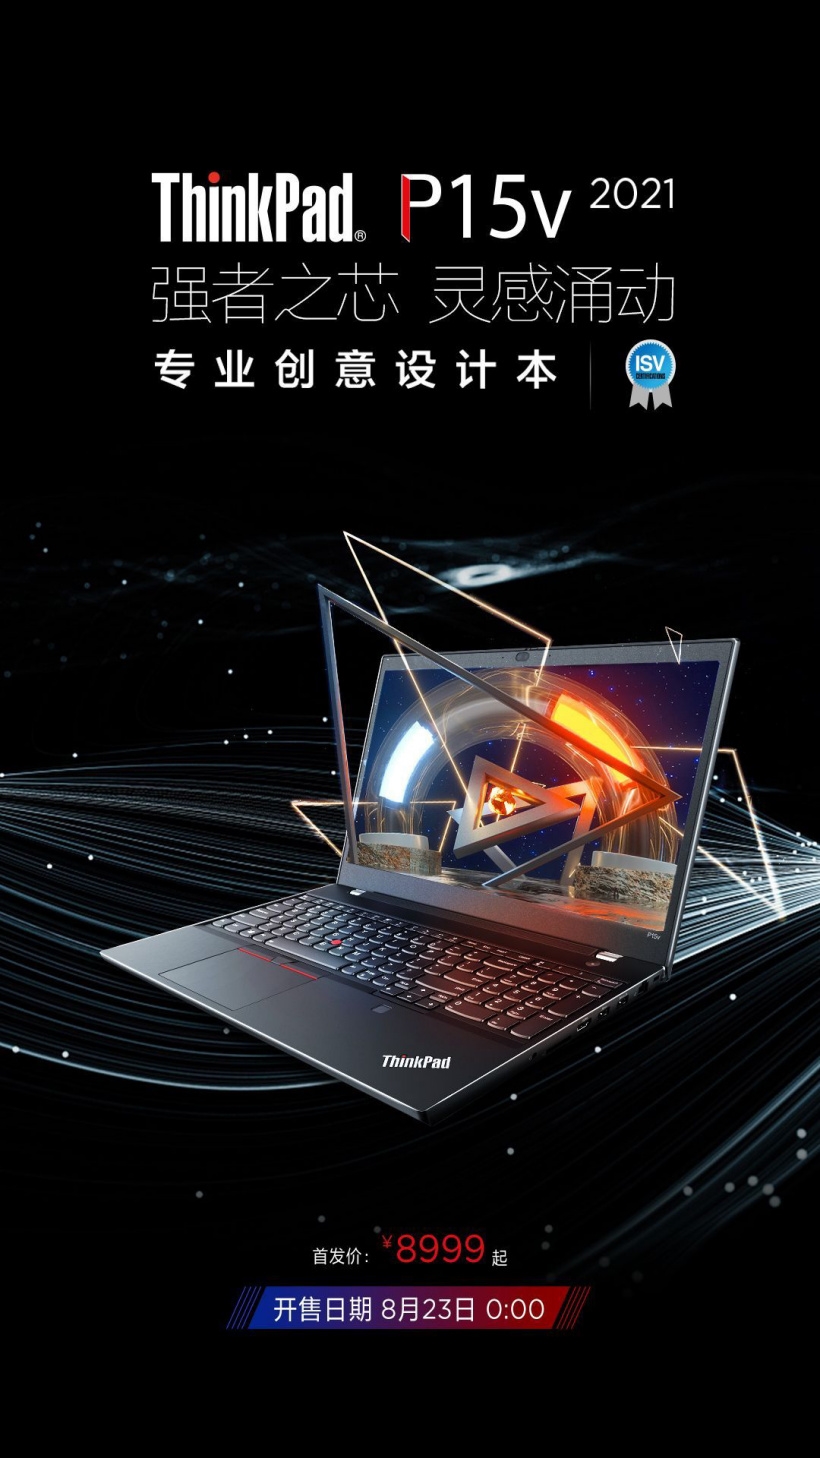 联想 ThinkPad P15v 今日首销 优惠价8999元